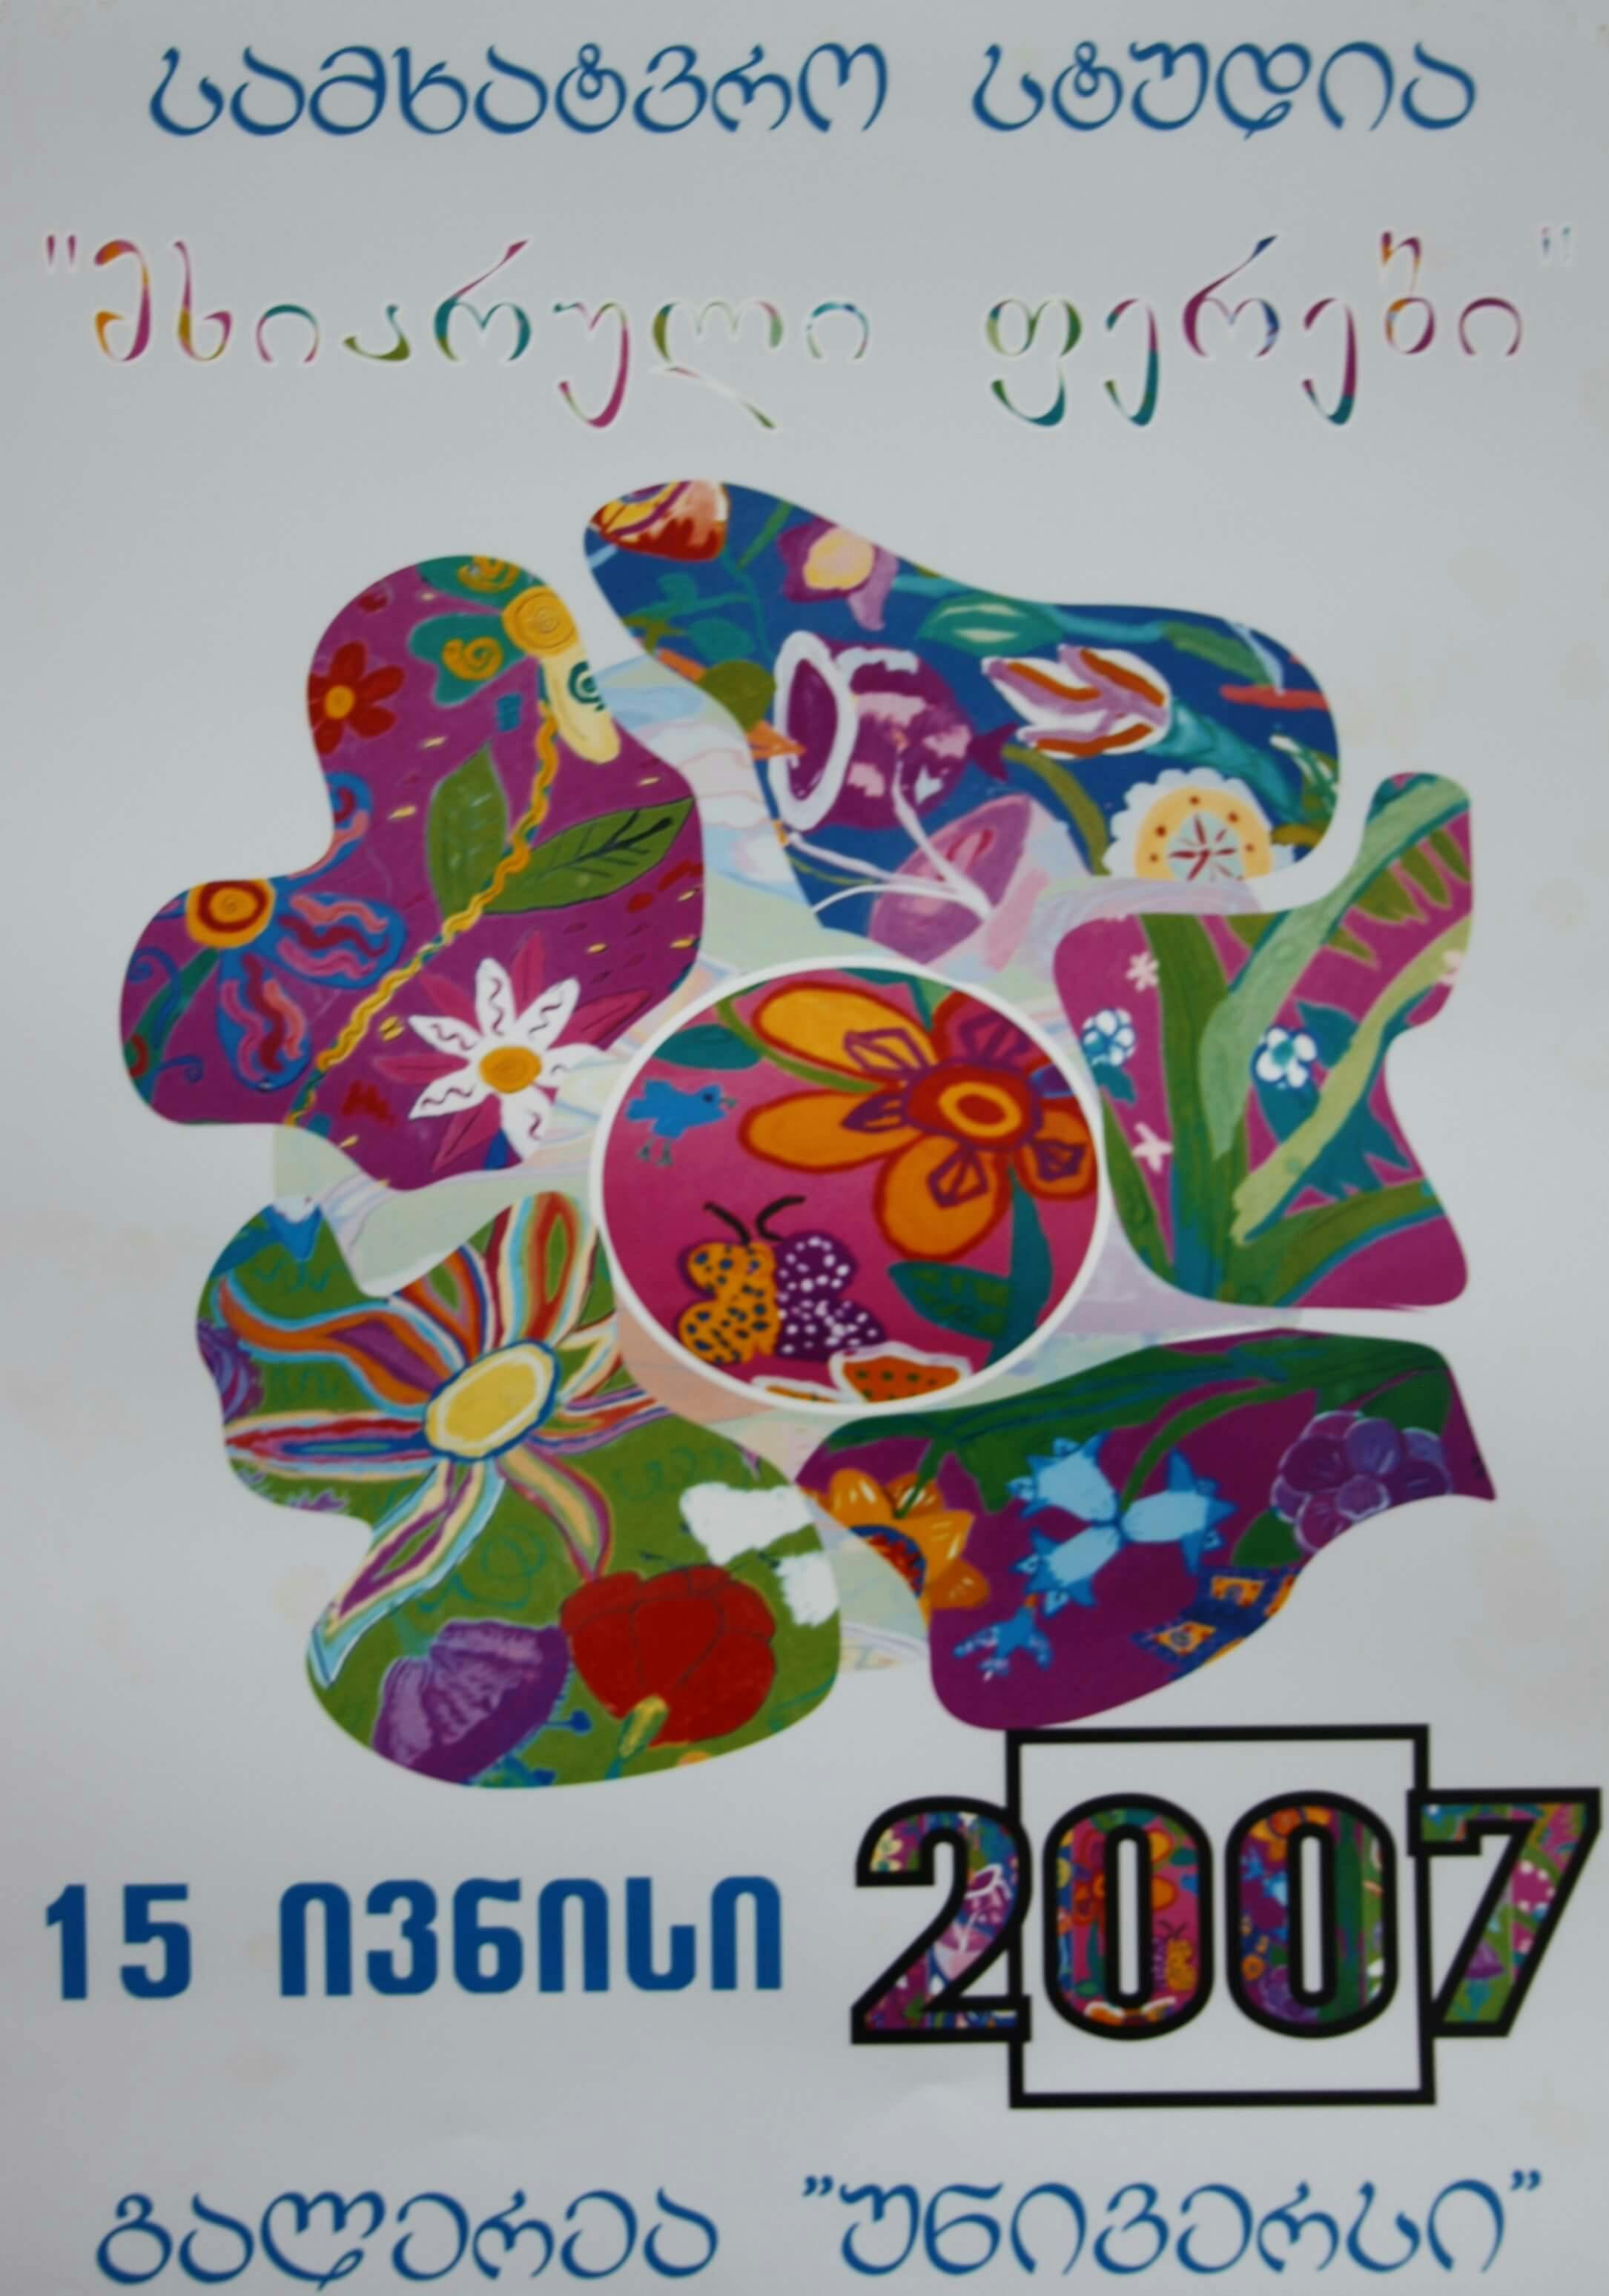 სტუდია "მხიარული ფერები" 15 ივნისი, 2007 წ